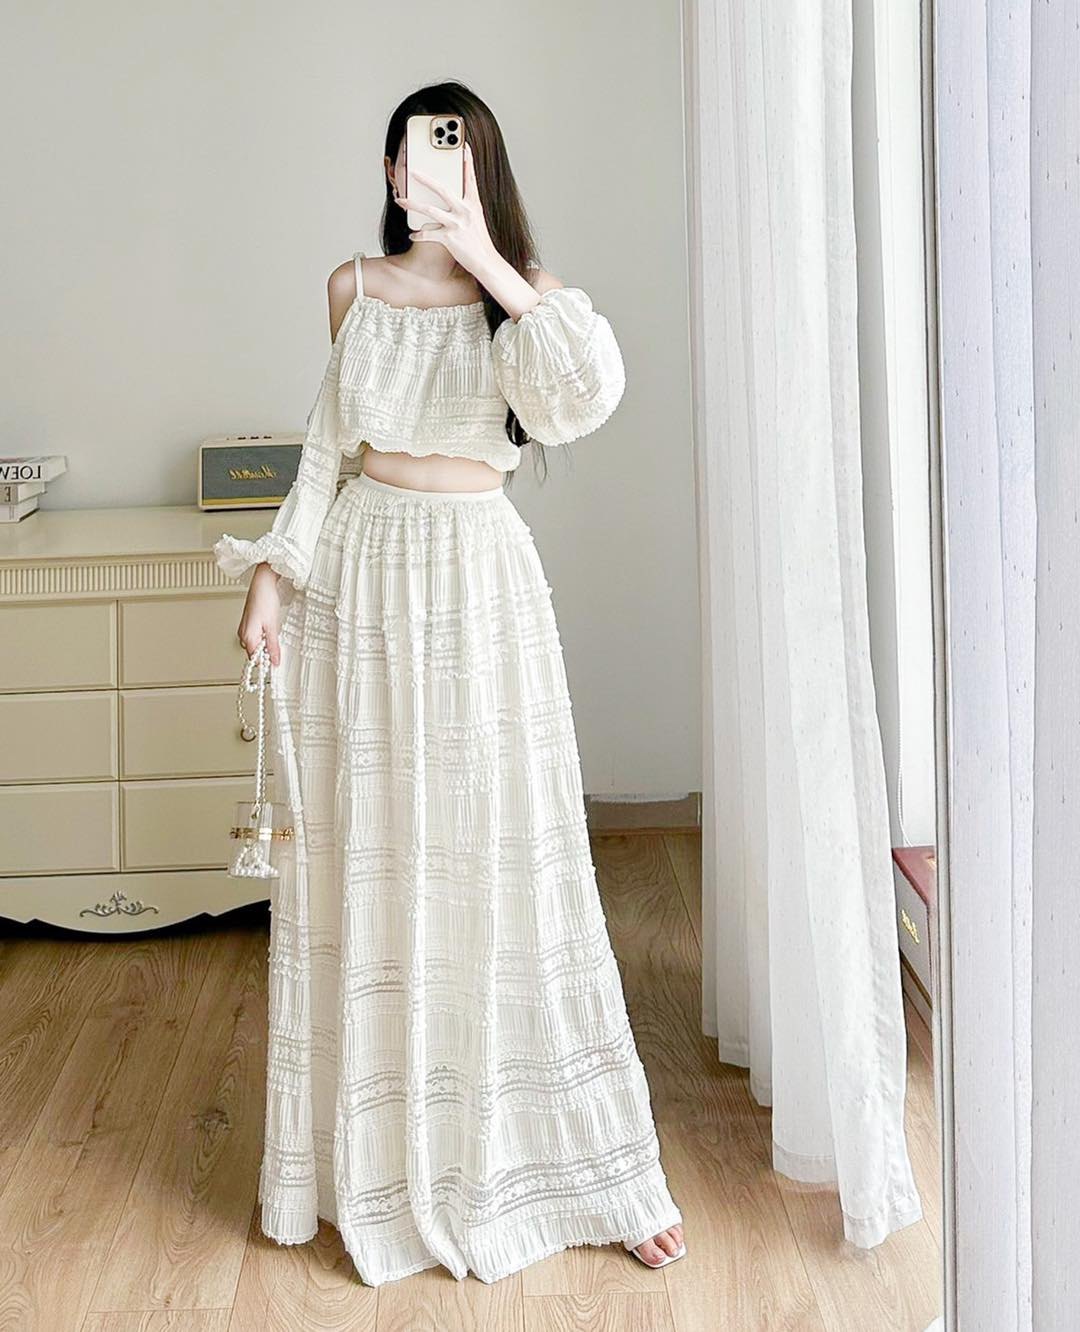 CV203 : Váy ren lưới bèo tầng dài công chúa có lót - yishop.com.vn